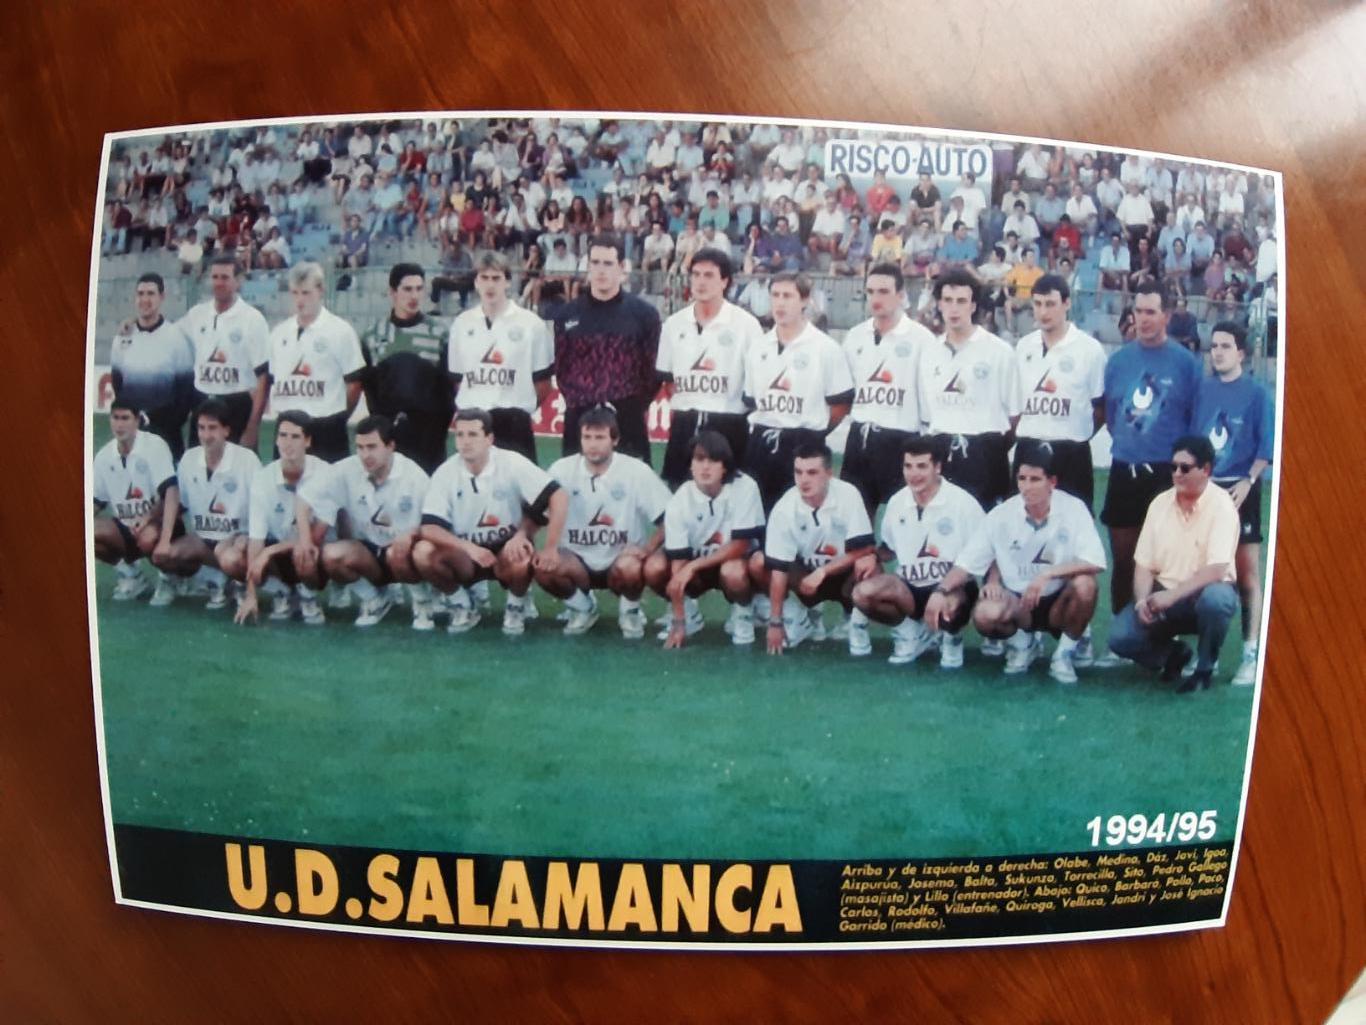 SALAMANCA 1994/95 (SPAIN)